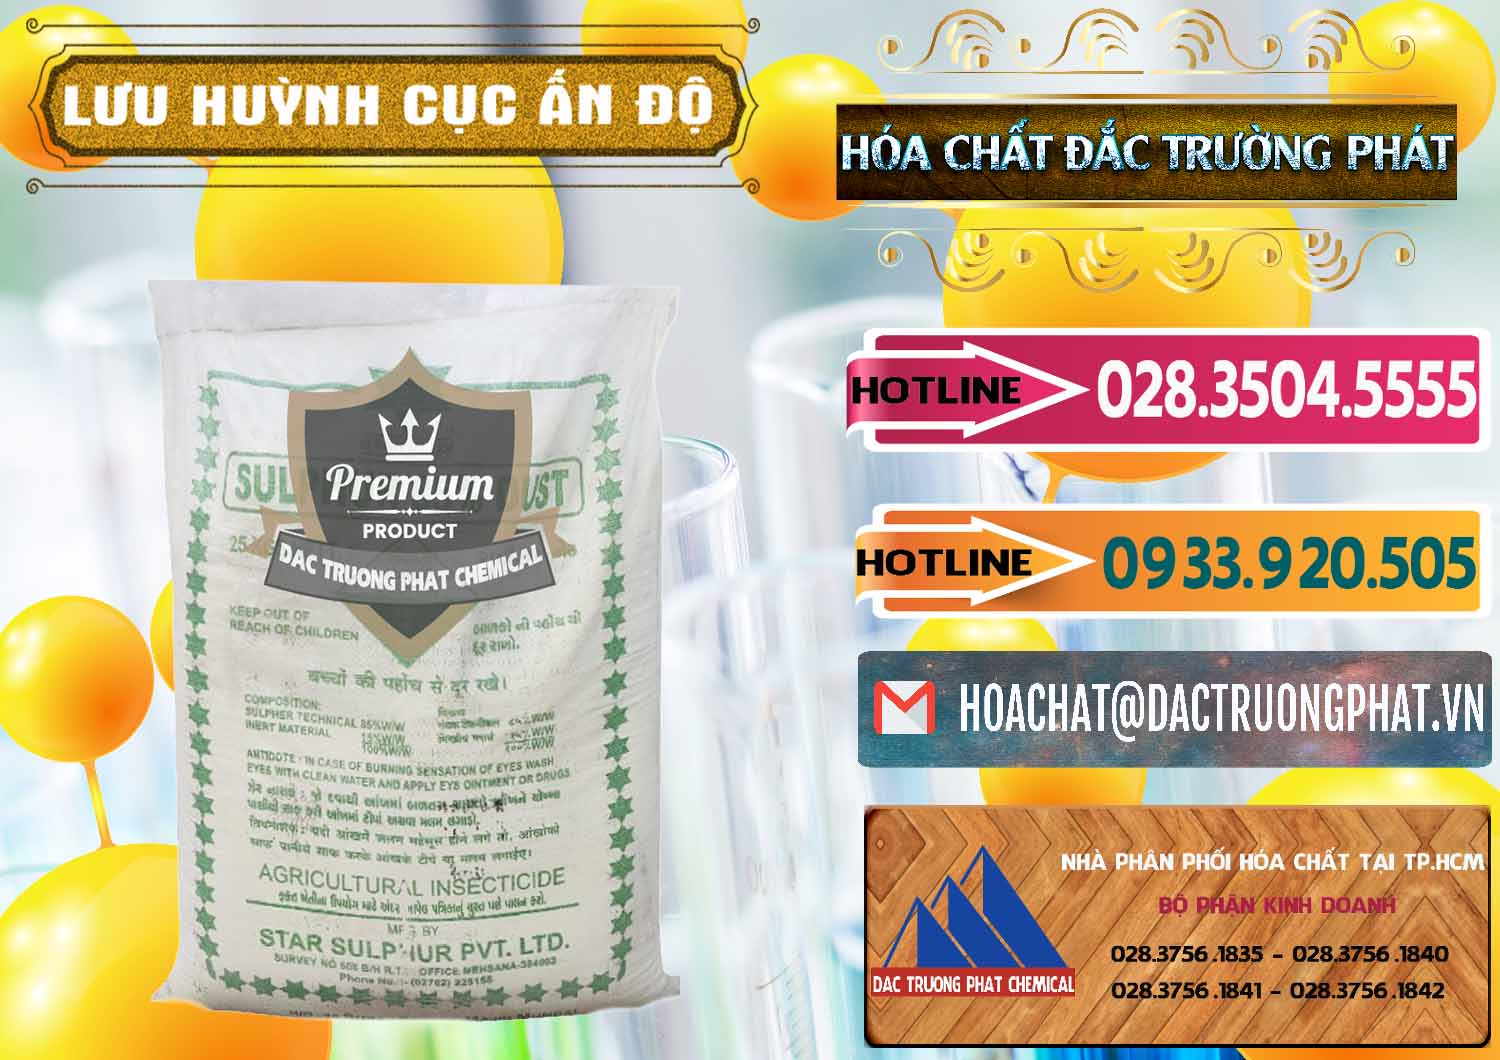 Cty bán ( cung cấp ) Lưu huỳnh Cục - Sulfur Ấn Độ India - 0348 - Đơn vị kinh doanh ( cung cấp ) hóa chất tại TP.HCM - dactruongphat.vn